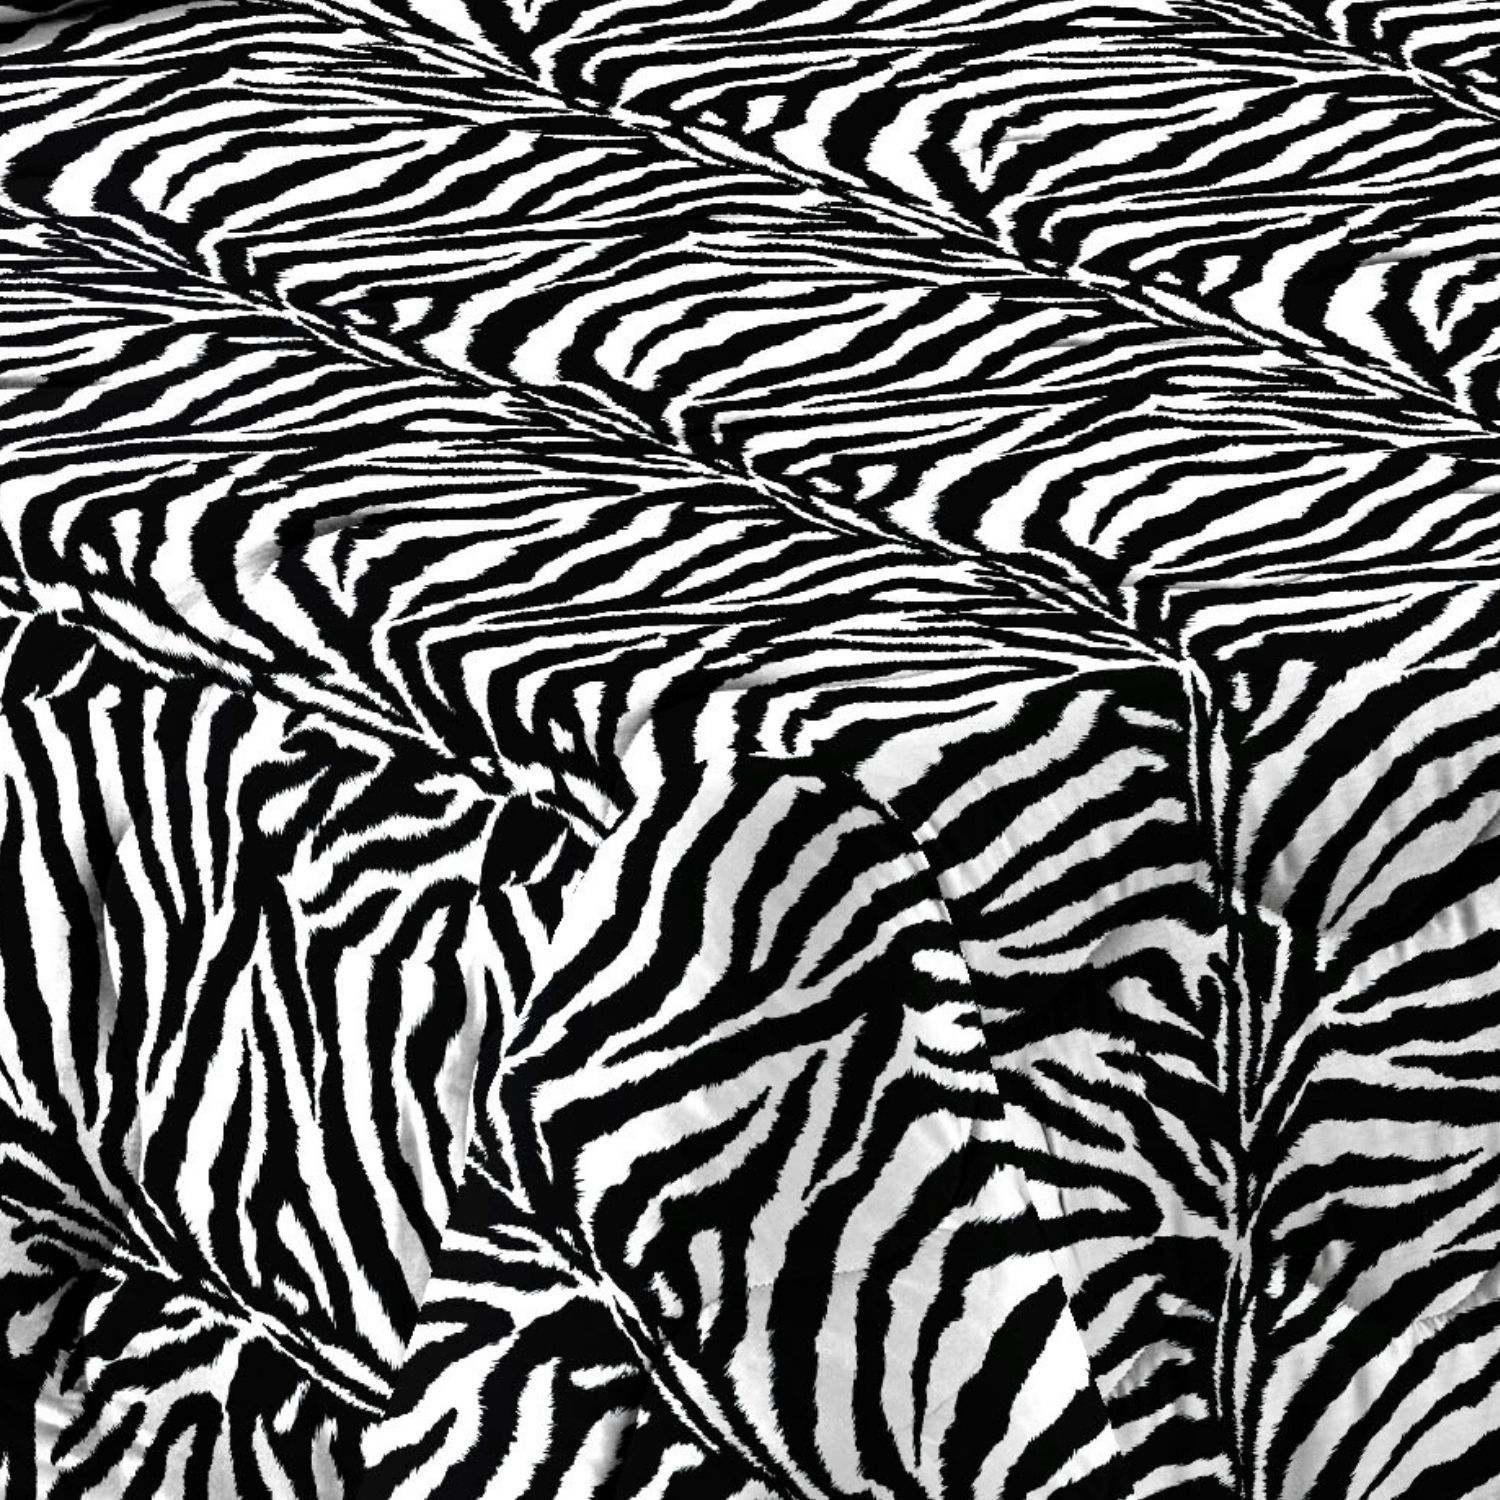 zebrato-trapunta-piumone-microfibra-made-in-italy-fantasia-animalier-bianco-nero-dettaglio